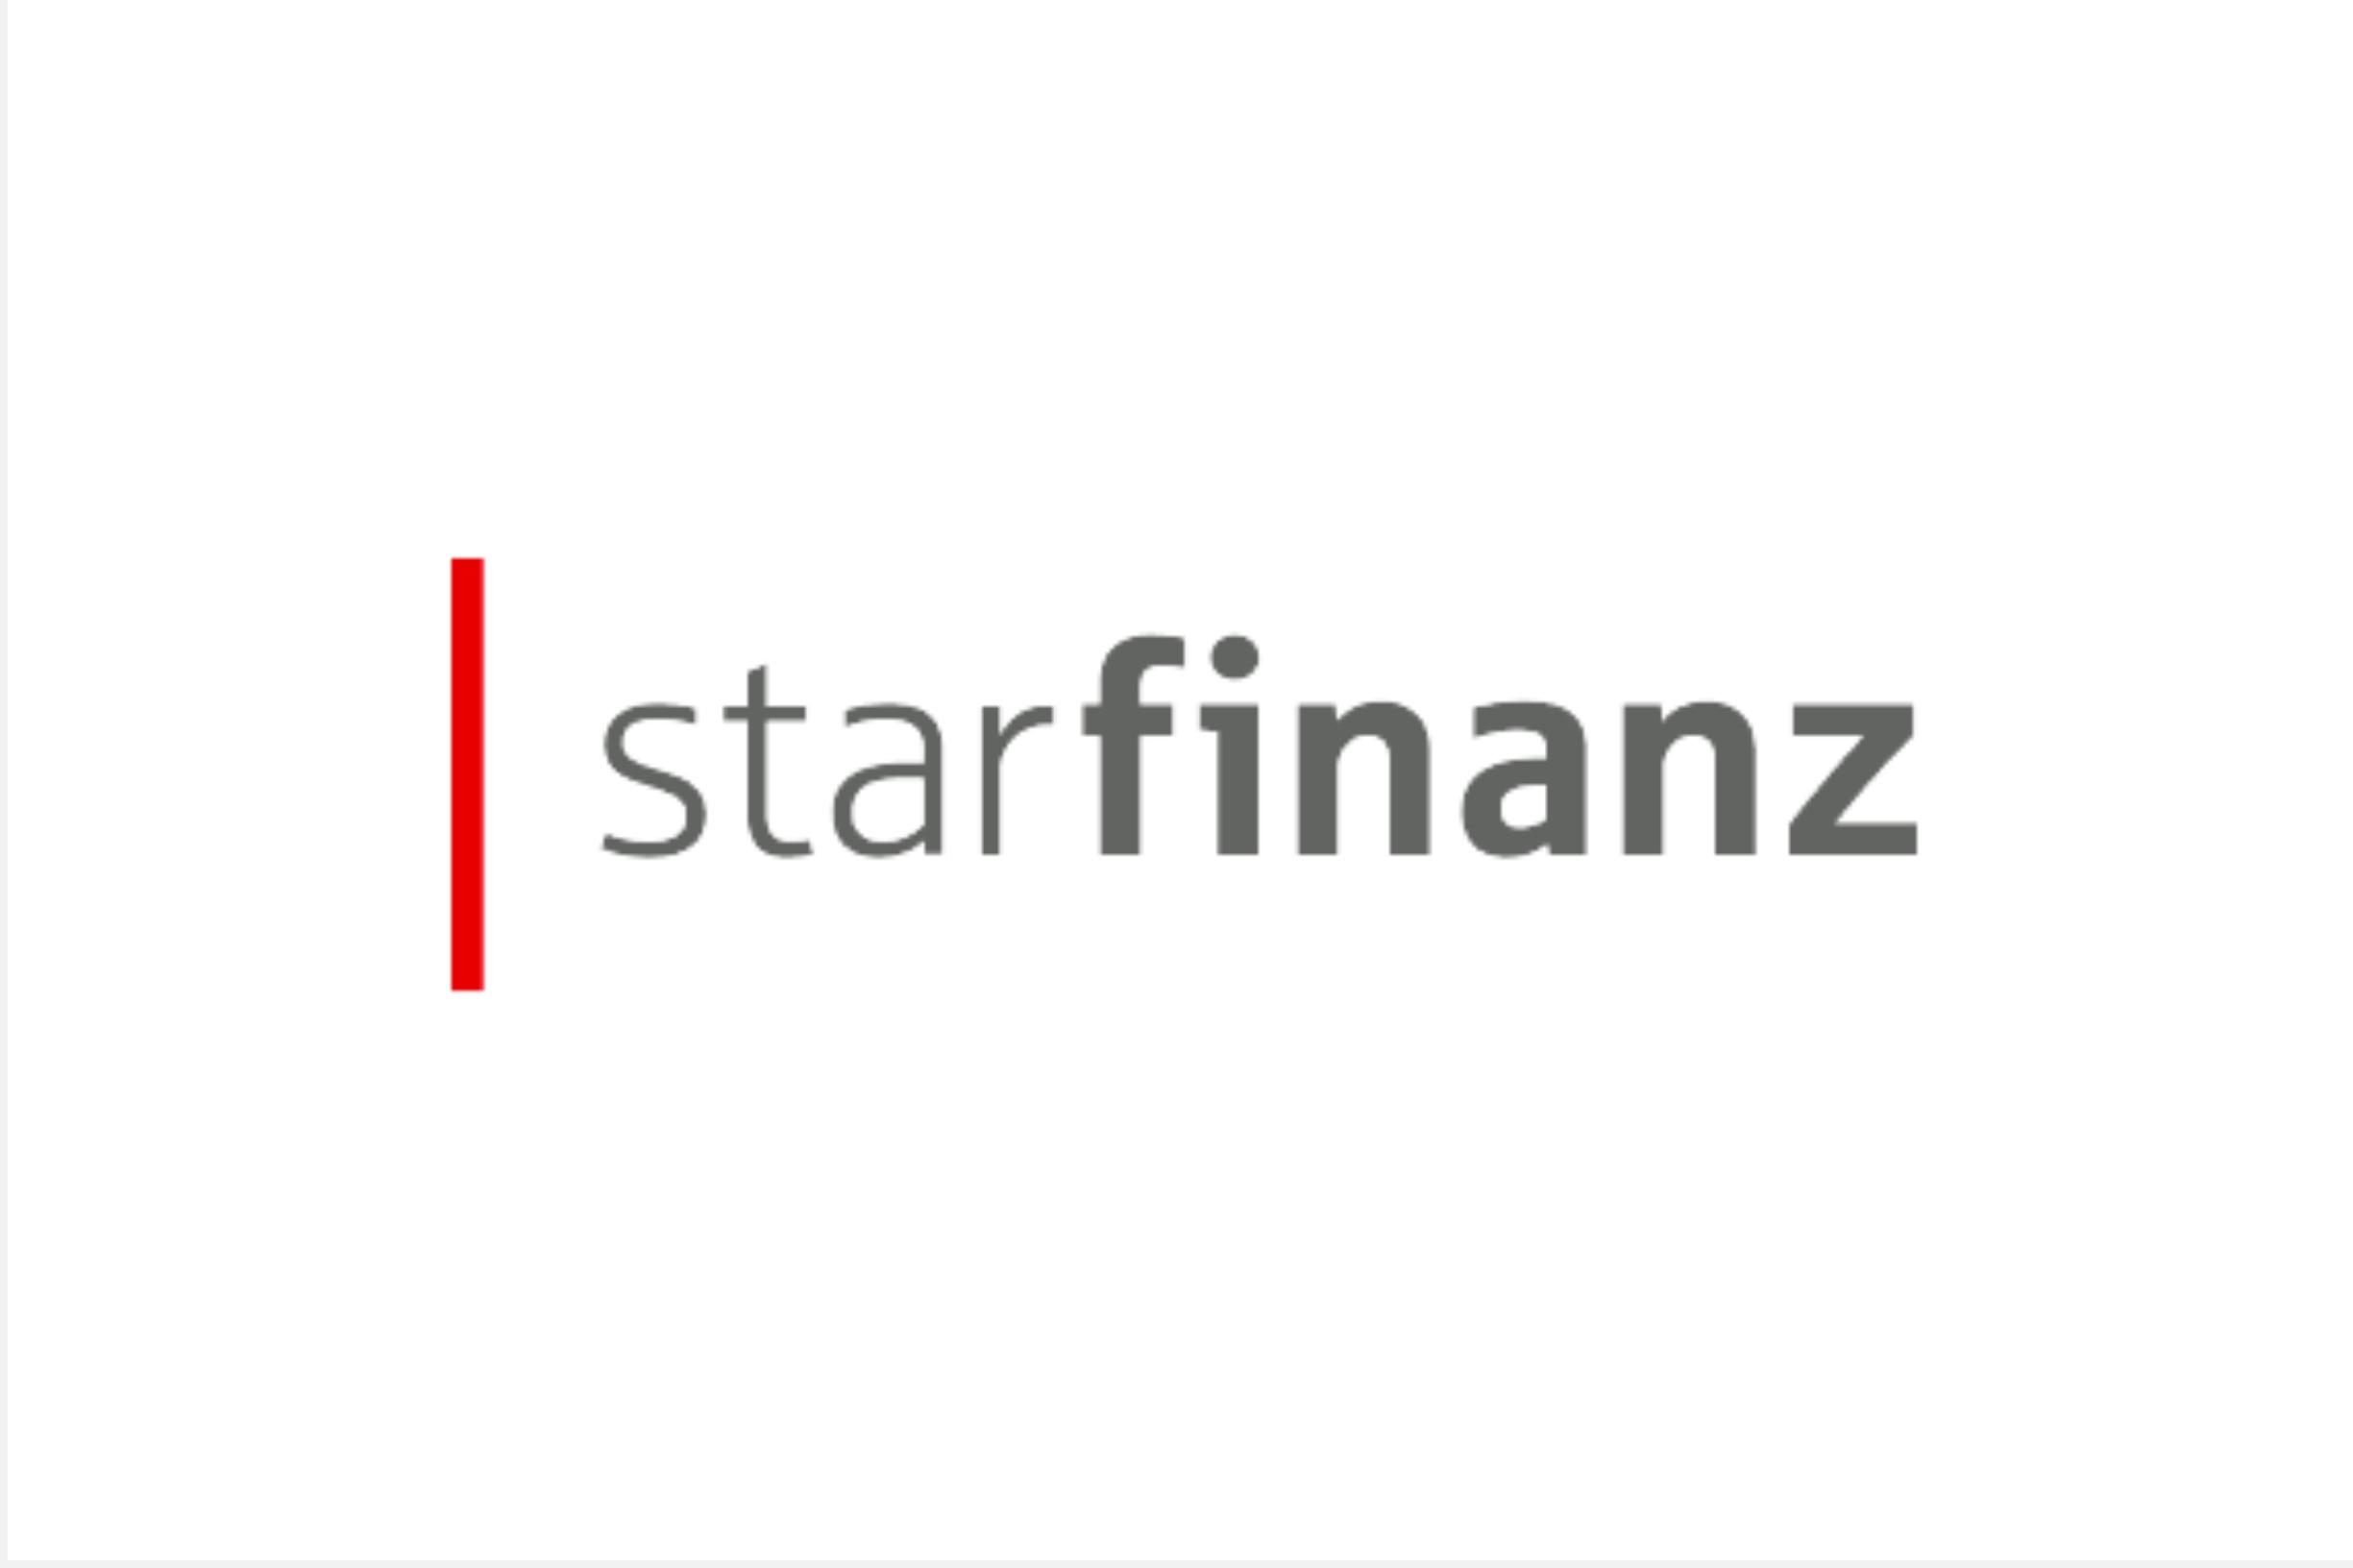 Starfinanz